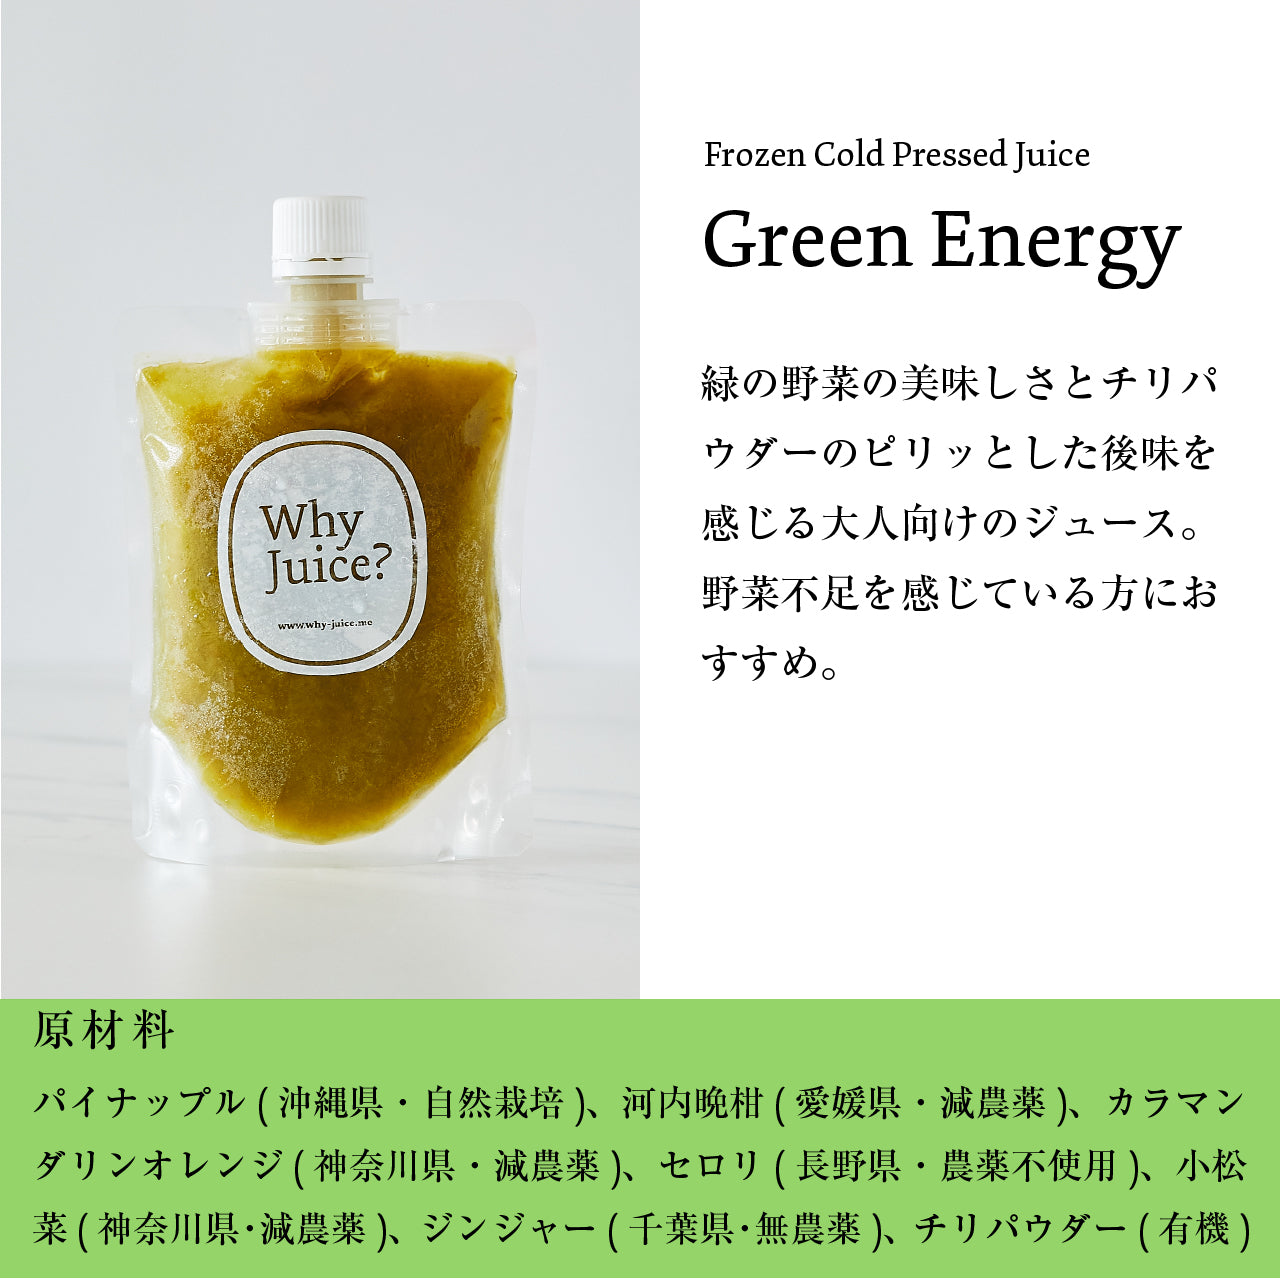 【ジュースクレンズ】Frozen Cold Pressed Juice【Green Energy】3本セット【コールドプレスジュース】